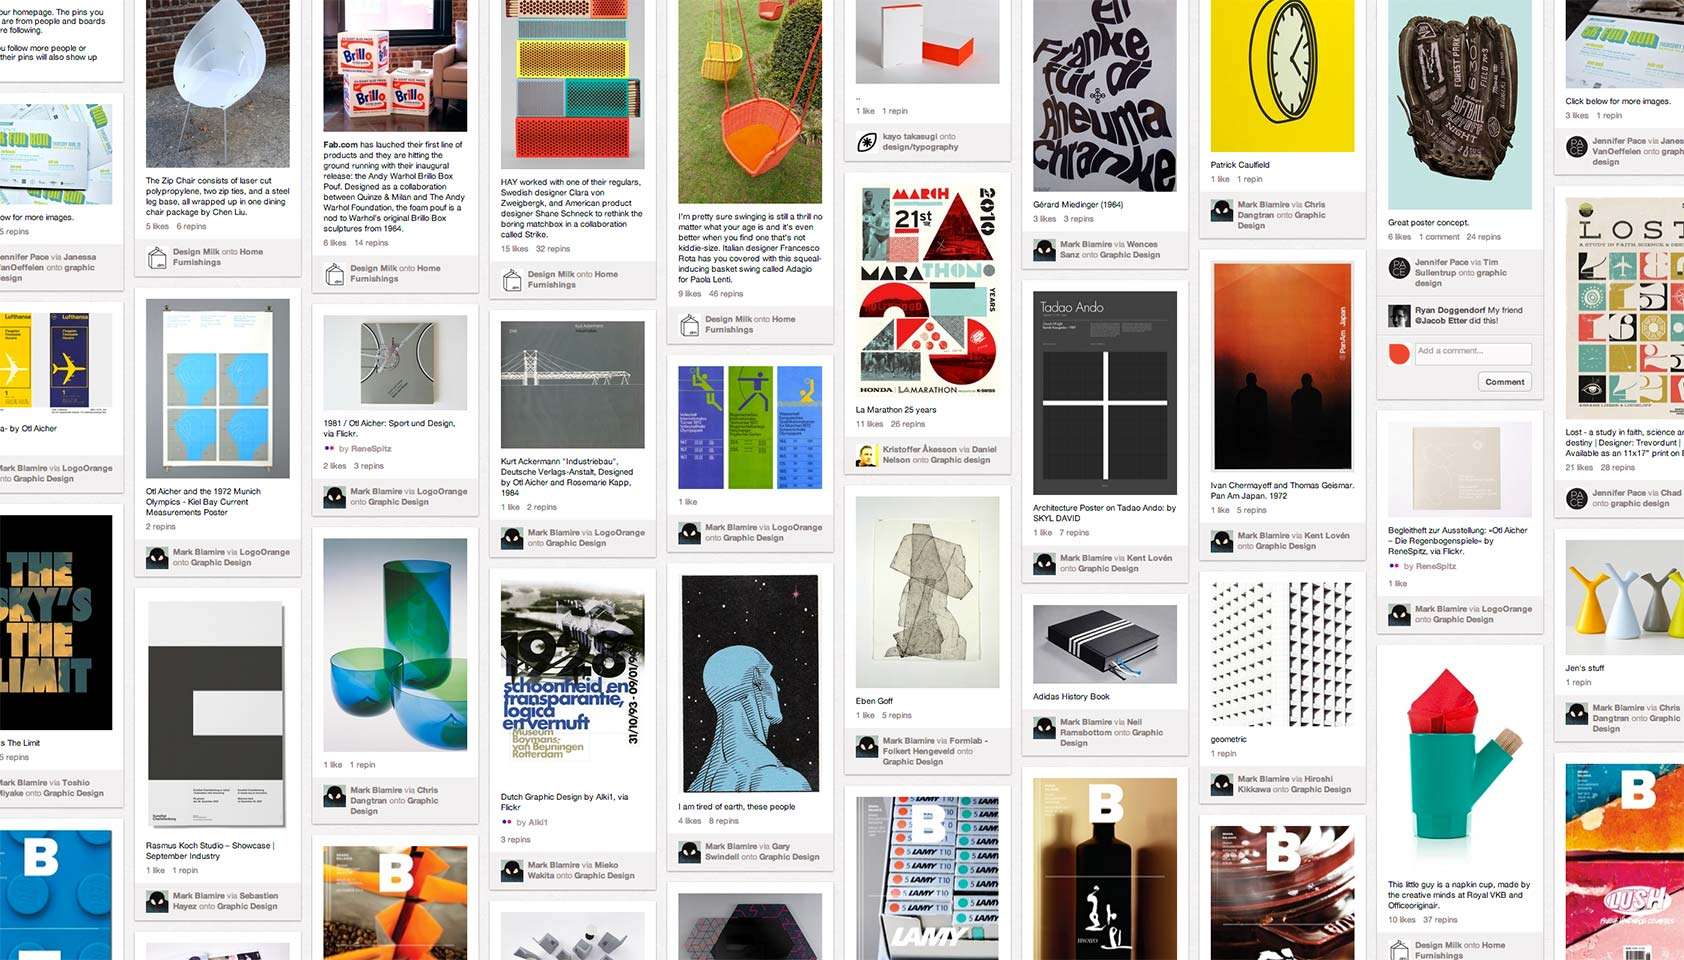 Social Media for Designers Pinterest Notes on Design